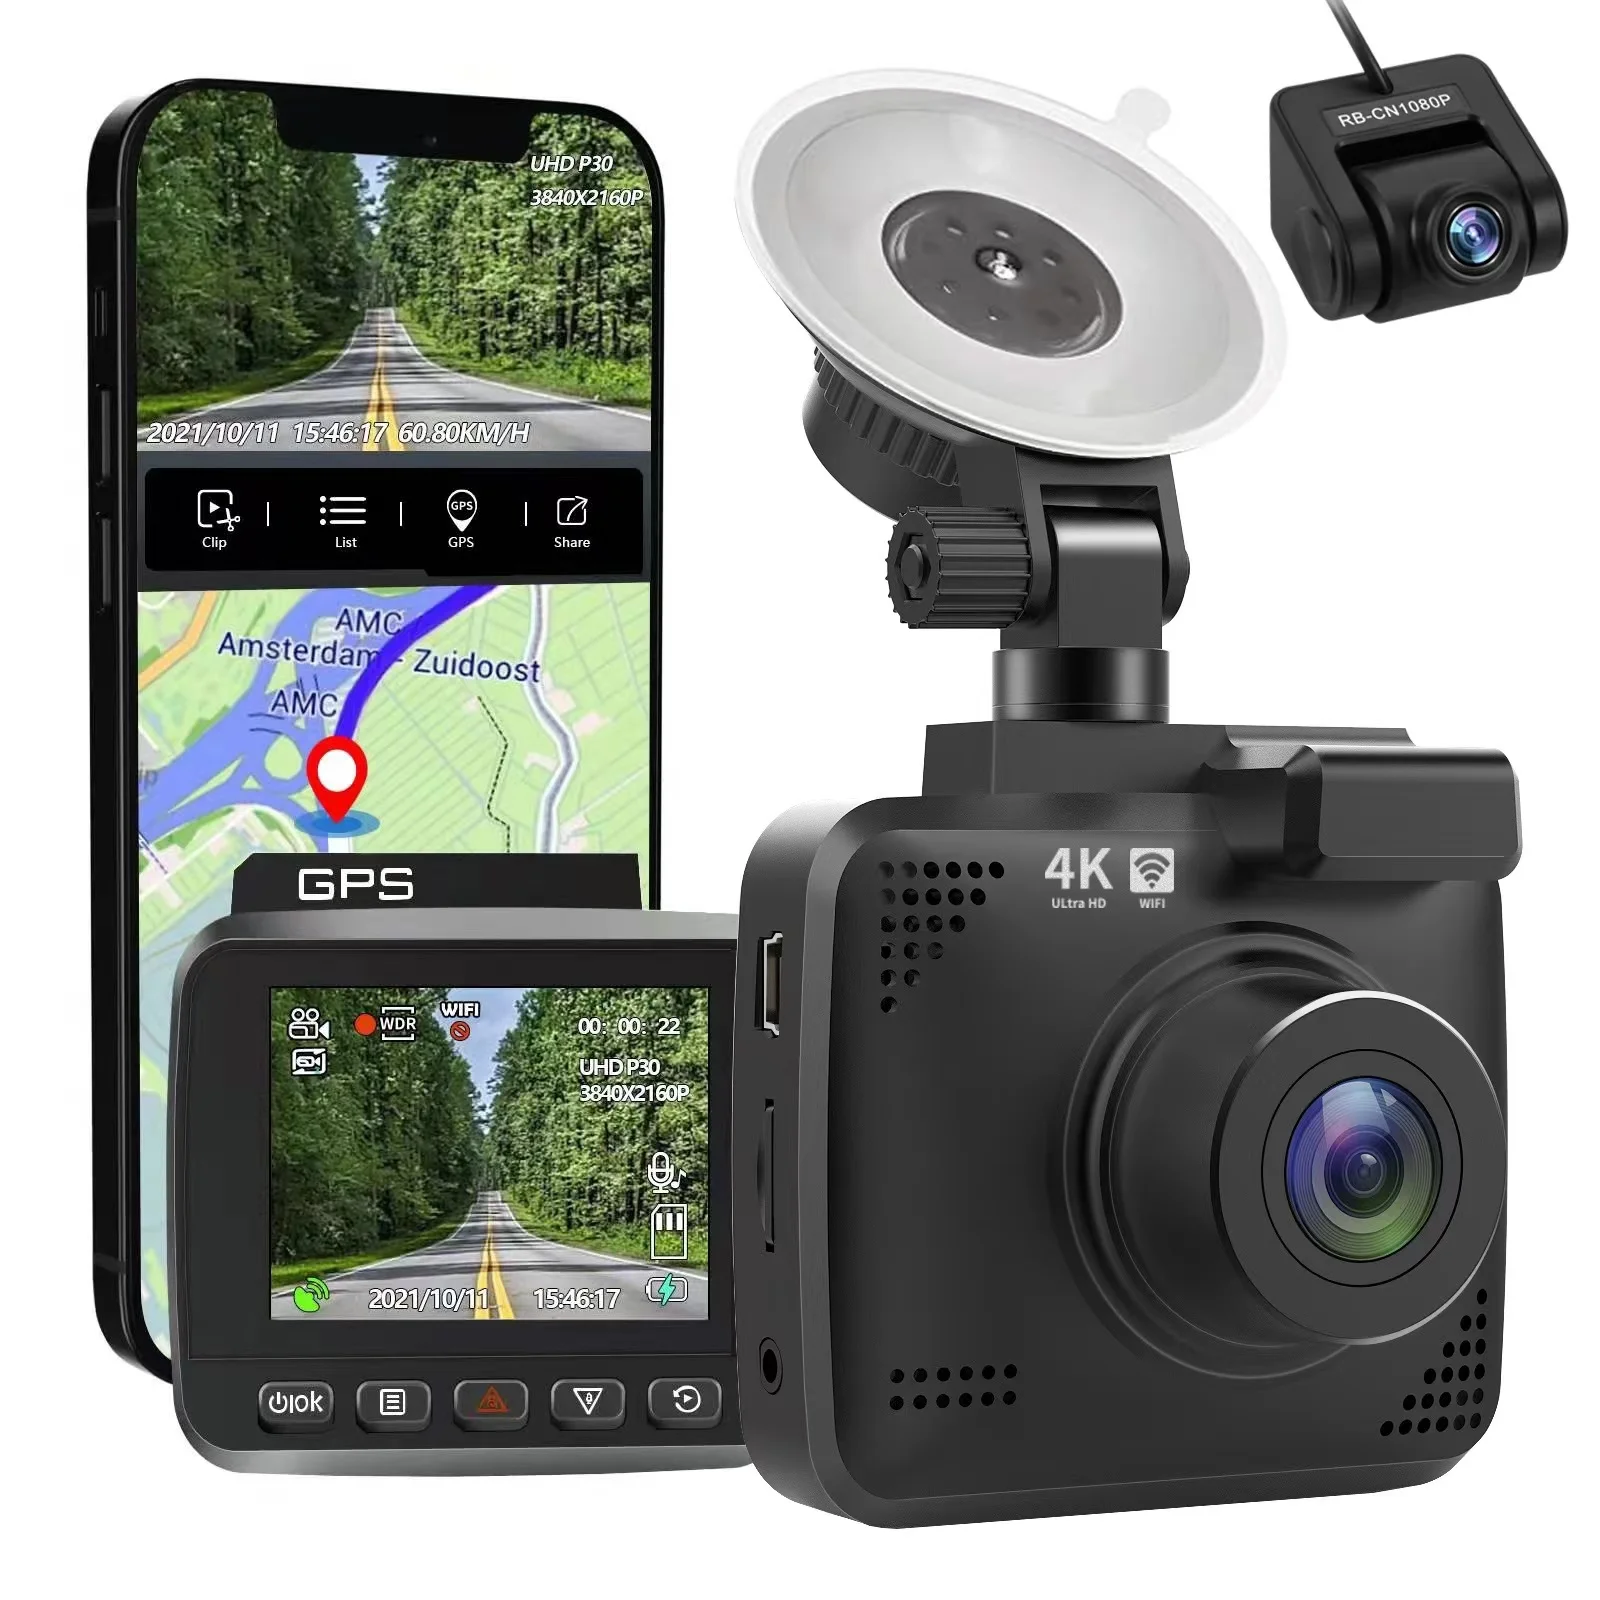 https://ae01.alicdn.com/kf/S257d9bfd5ae74f58a0b4950eb4a3cf3eK/V53-Full-HD-Dash-Cam-Front-Rear-Dual-Channel-Car-Dash-Camera-4K-1080P-With-GPS.jpg